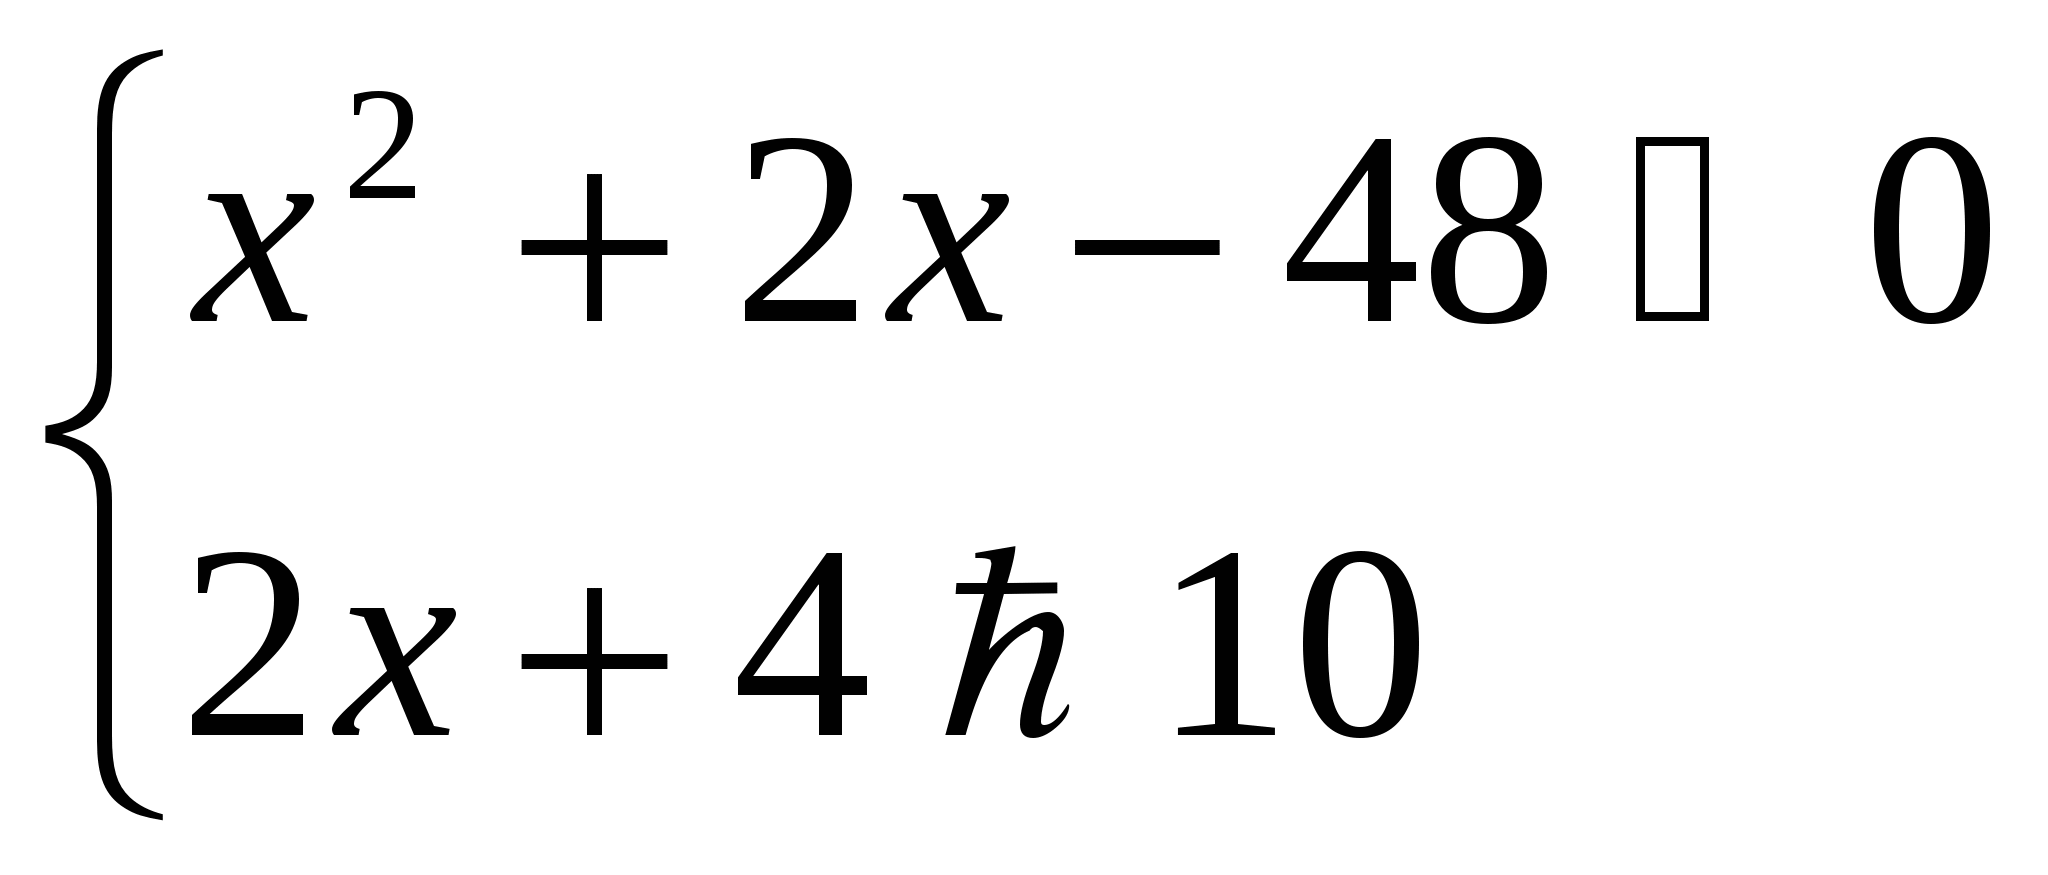 Контрольные срезы по математике за 1 полугодие 5, 9, 10, 11 класс